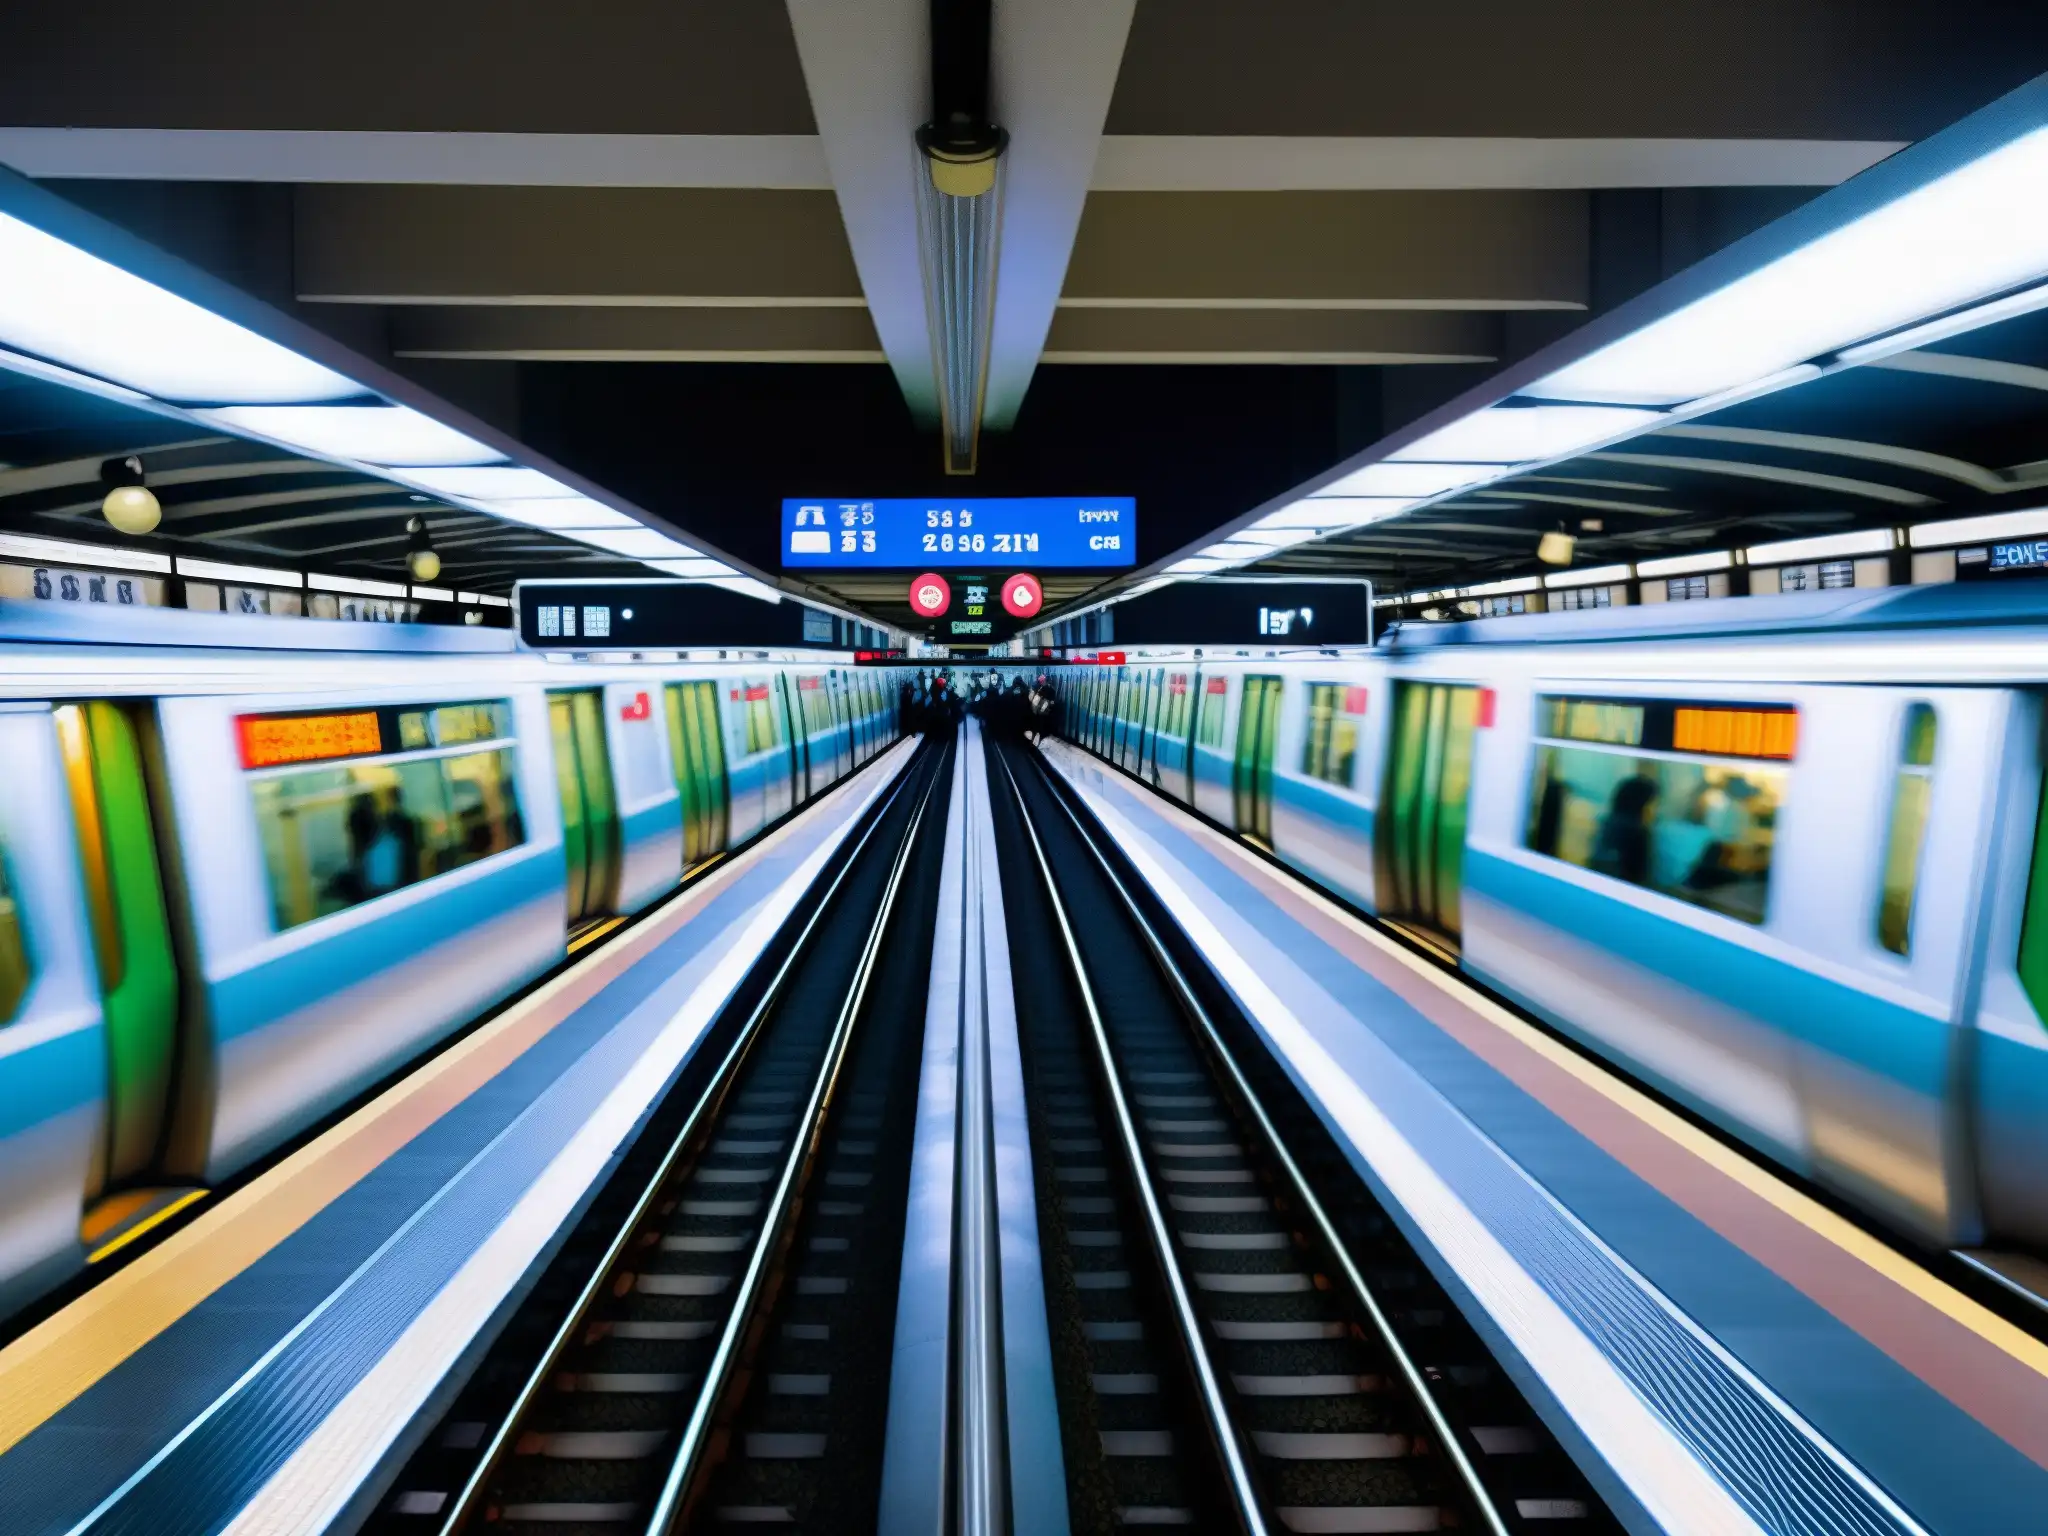 La red del metro de Tokio, con sus vías, bulliciosas plataformas y multitud de viajeros, transmite la energía y la complejidad del sistema